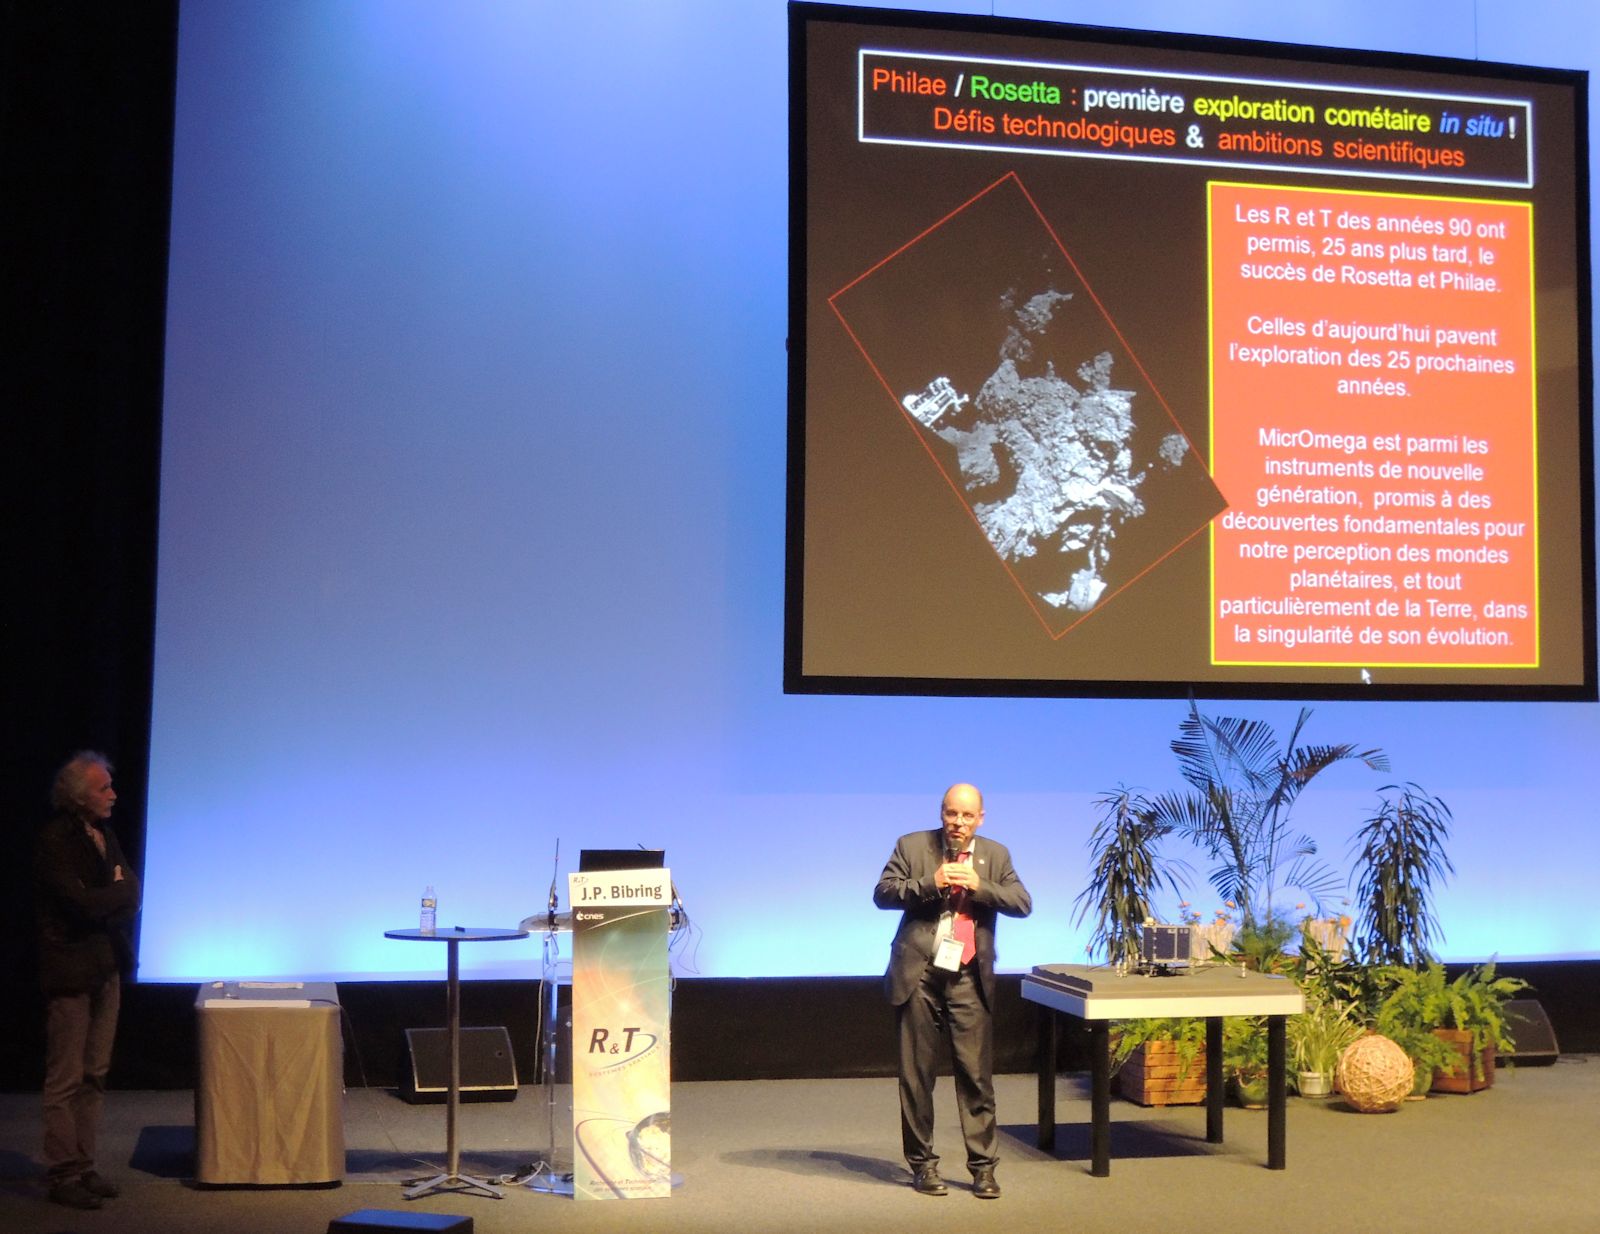 CNES - Journées R et T - Marc Pircher - Jean-Pierre Bibring - R&T et préparation du futur - Conférence Philae Rosetta - IAS